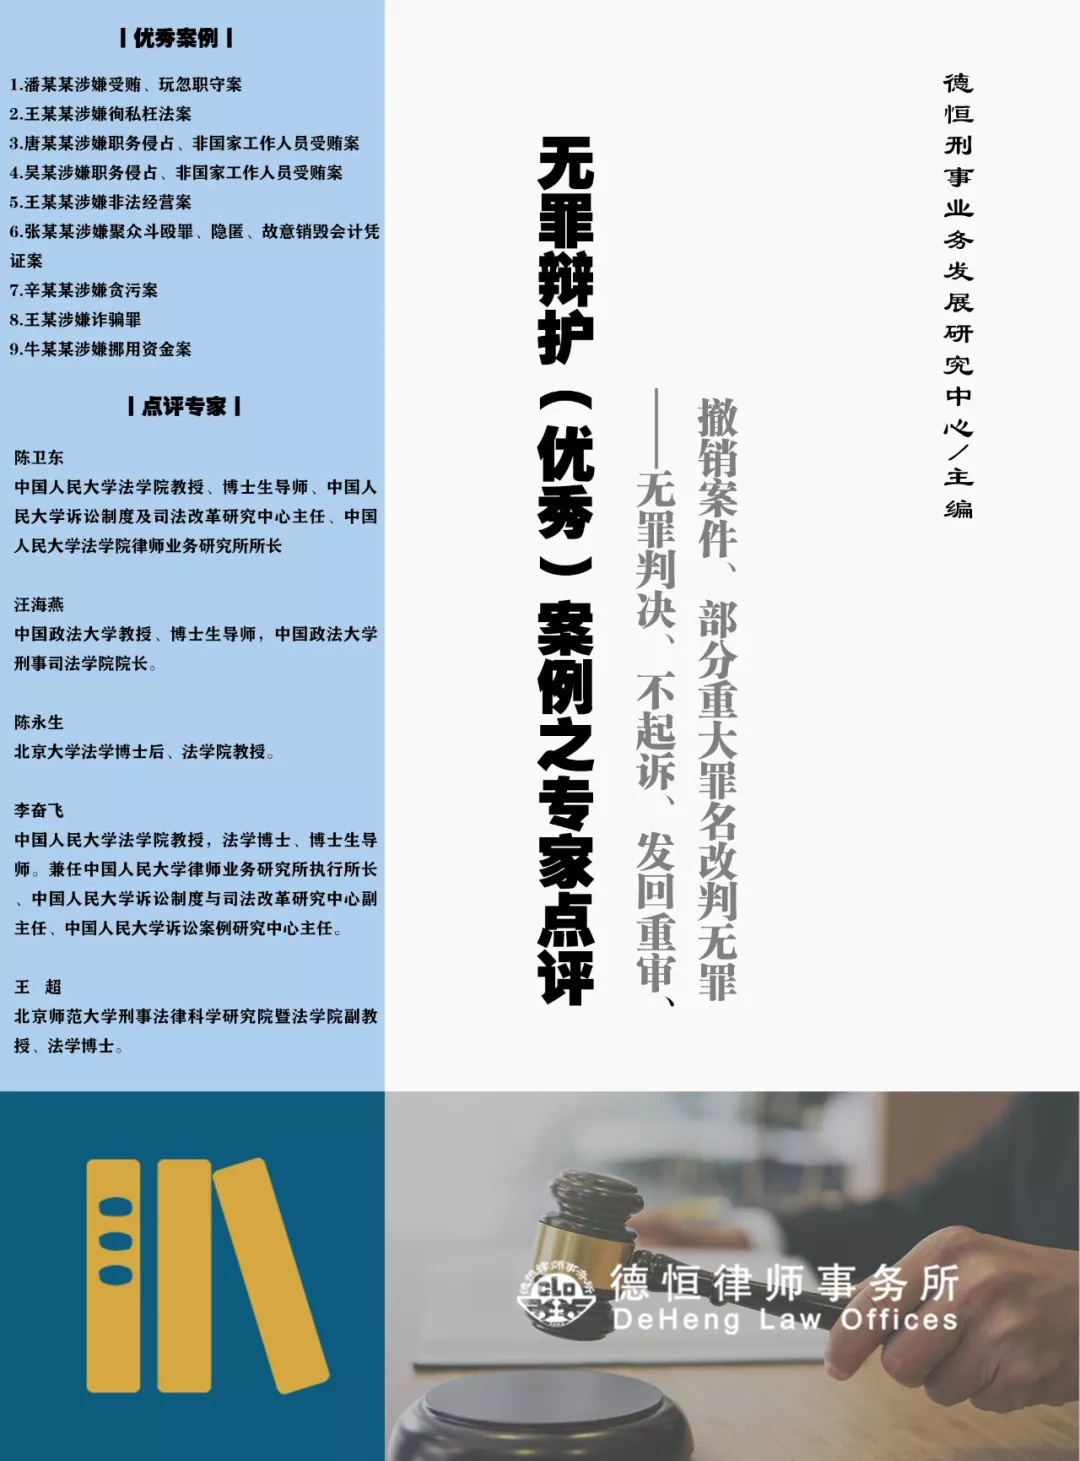 深圳市专业刑事辩护律师助力维护公民权益  第1张